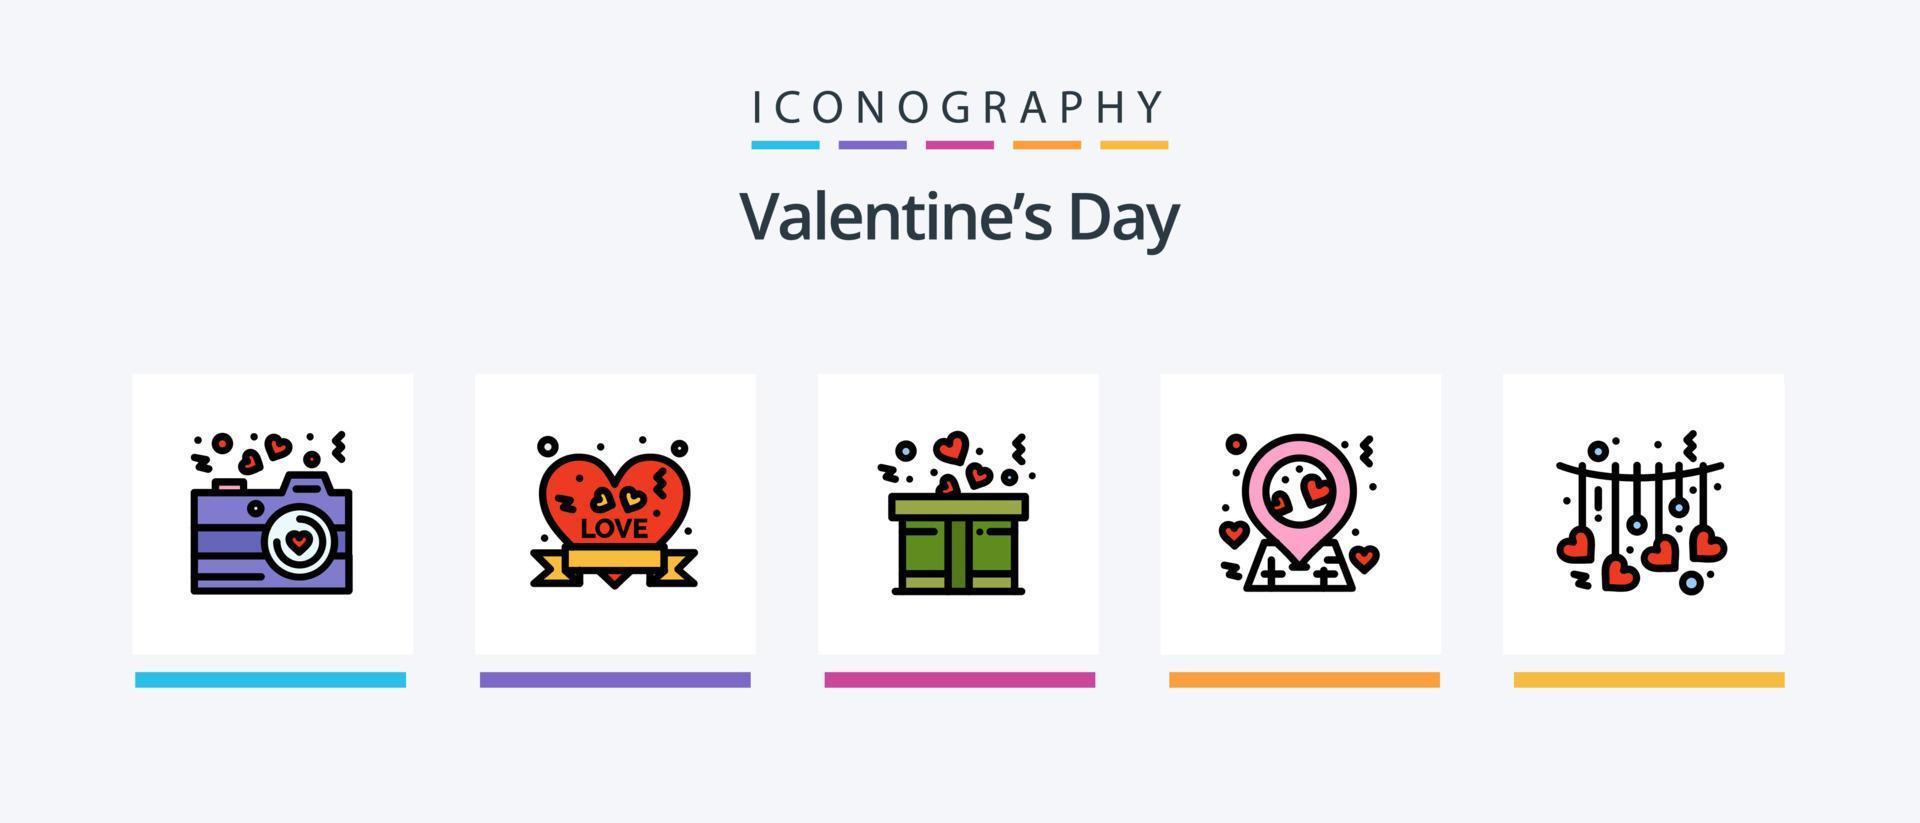 la línea del día de san valentín llenó un paquete de 5 íconos que incluye amor. letras del corazón. tener una cita. compras. regalo. diseño de iconos creativos vector